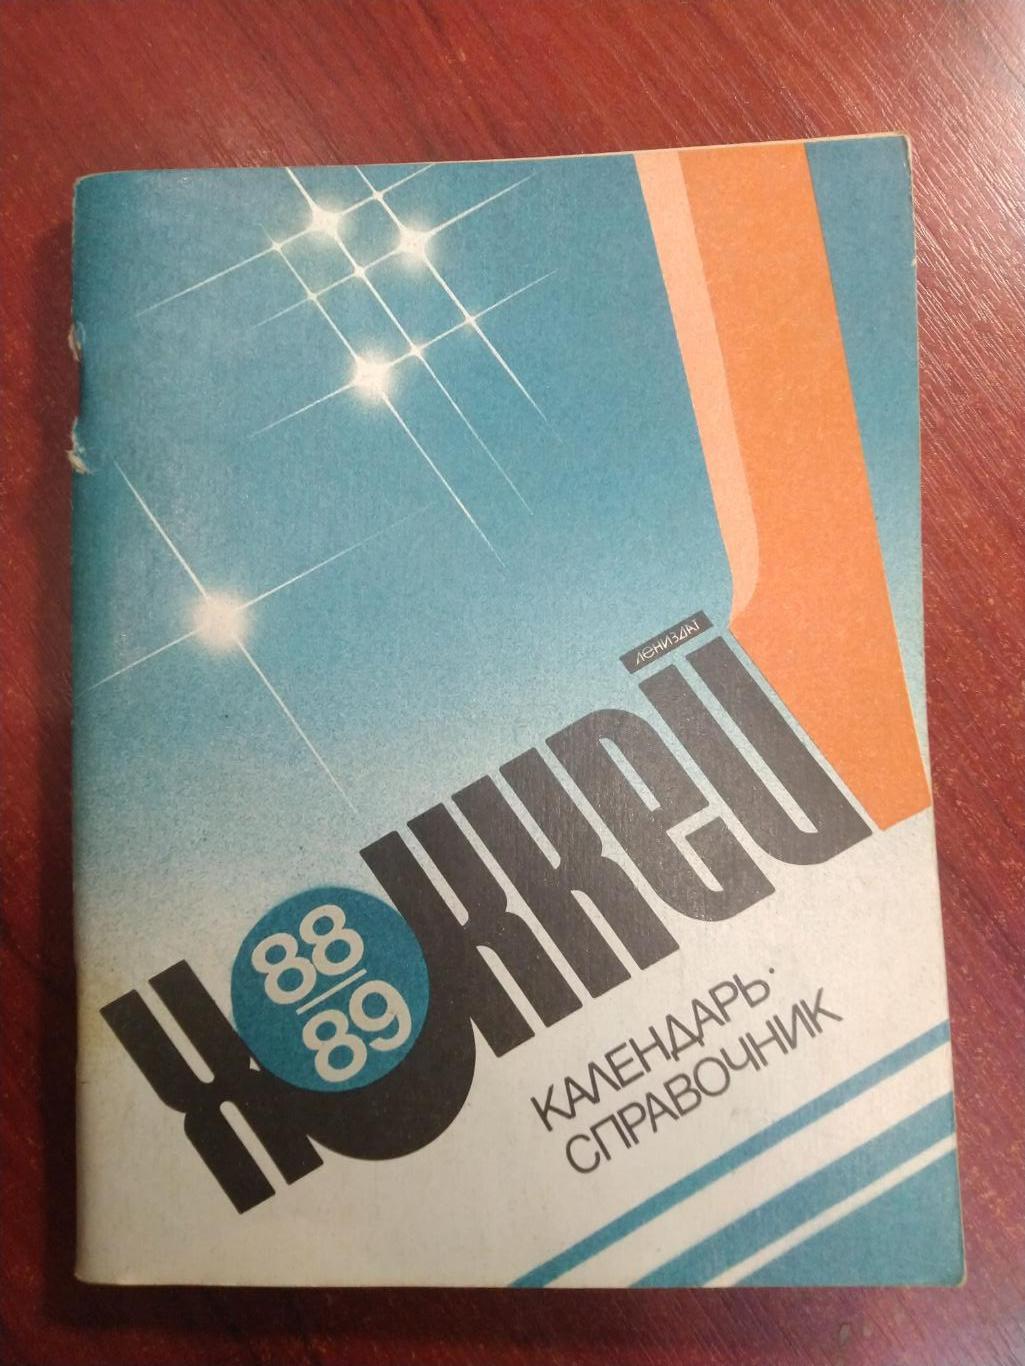 Хоккей Календарь-справочник 1988-89 Ленинград